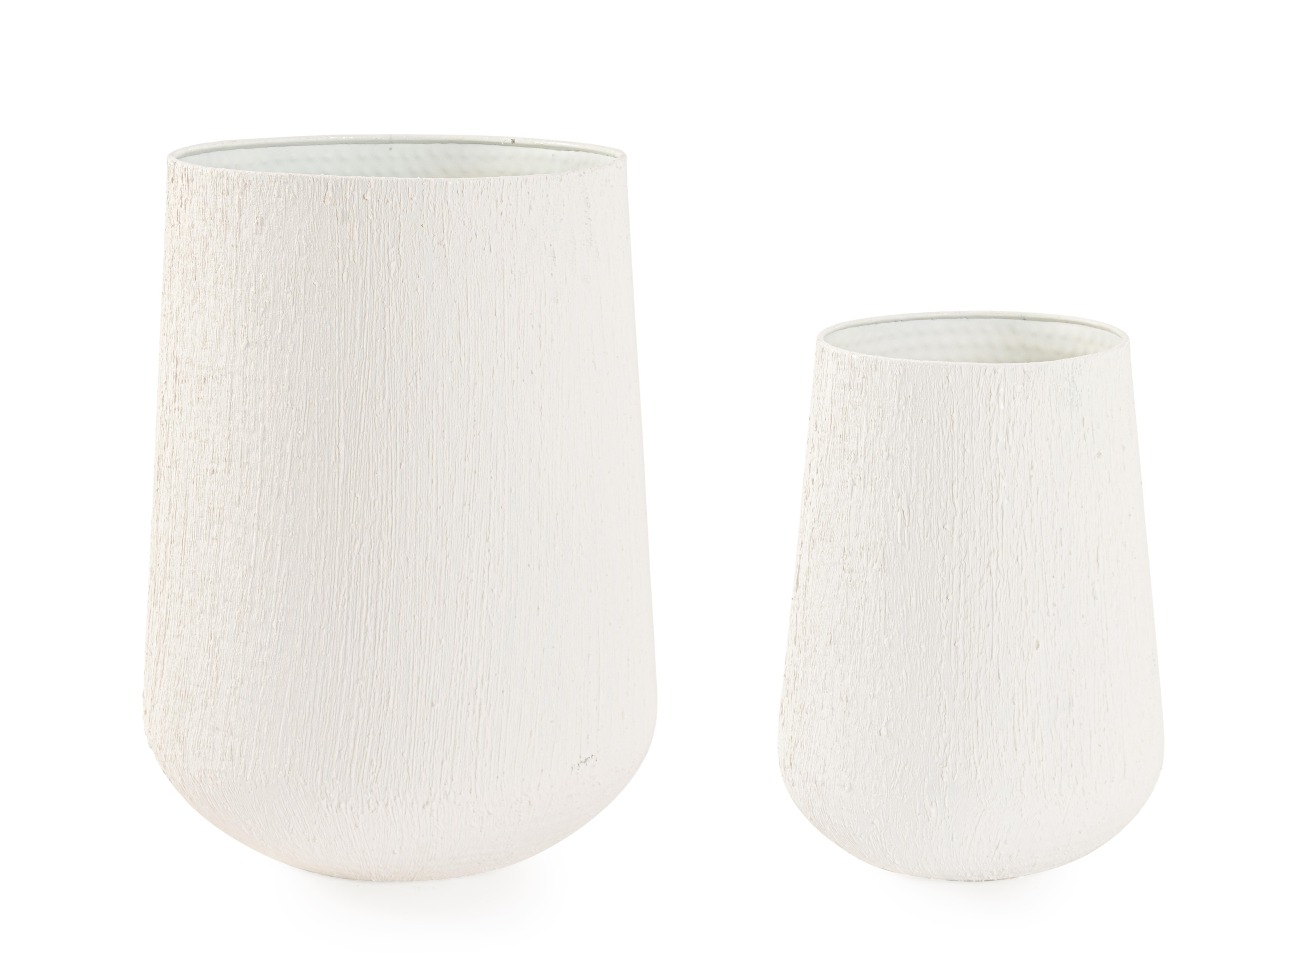 Die Outdoor Vase Kenar überzeugt mit ihrem modernen Design. Gefertigt wurde sie aus Metall, welches einen weißen Farbton besitzt. Die Vase besteht aus einem 2er Set in unterschiedlichen Größen.